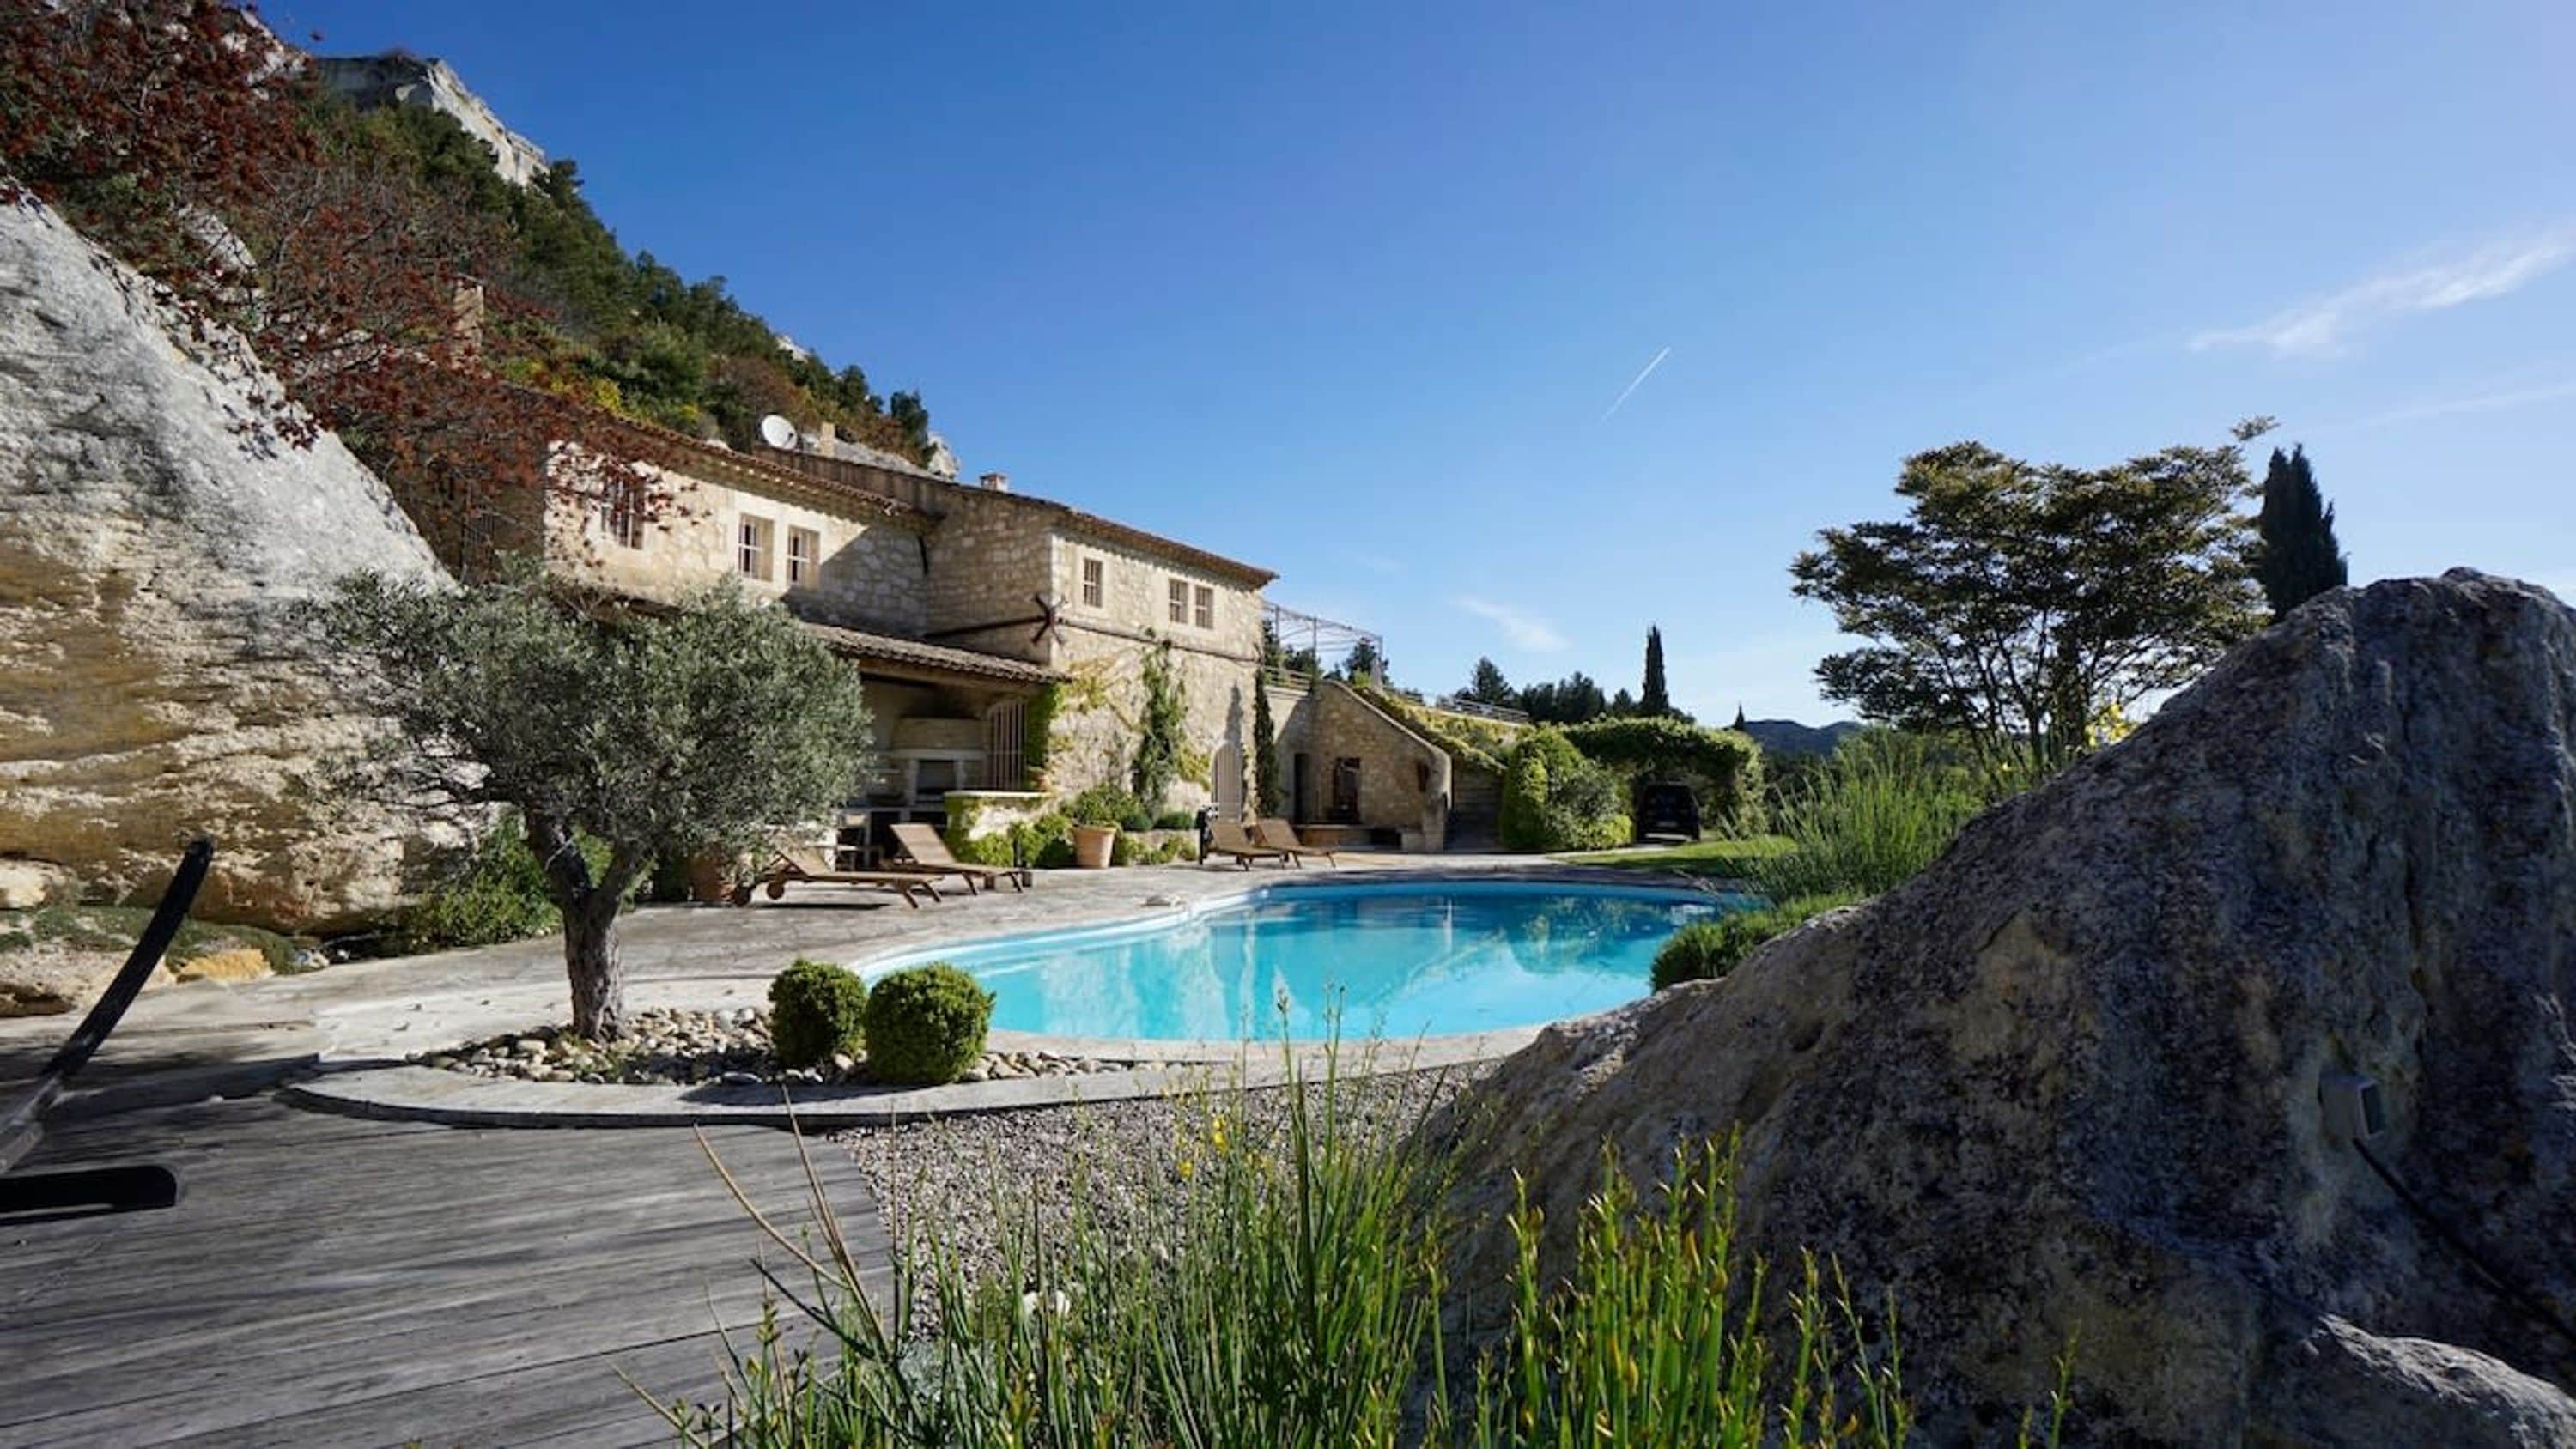 Property Image 1 - Le Dernier Chateau - Architect s Stone Villa   Pool in Picturesque Les Baux-de-Provence  5 Bedrooms